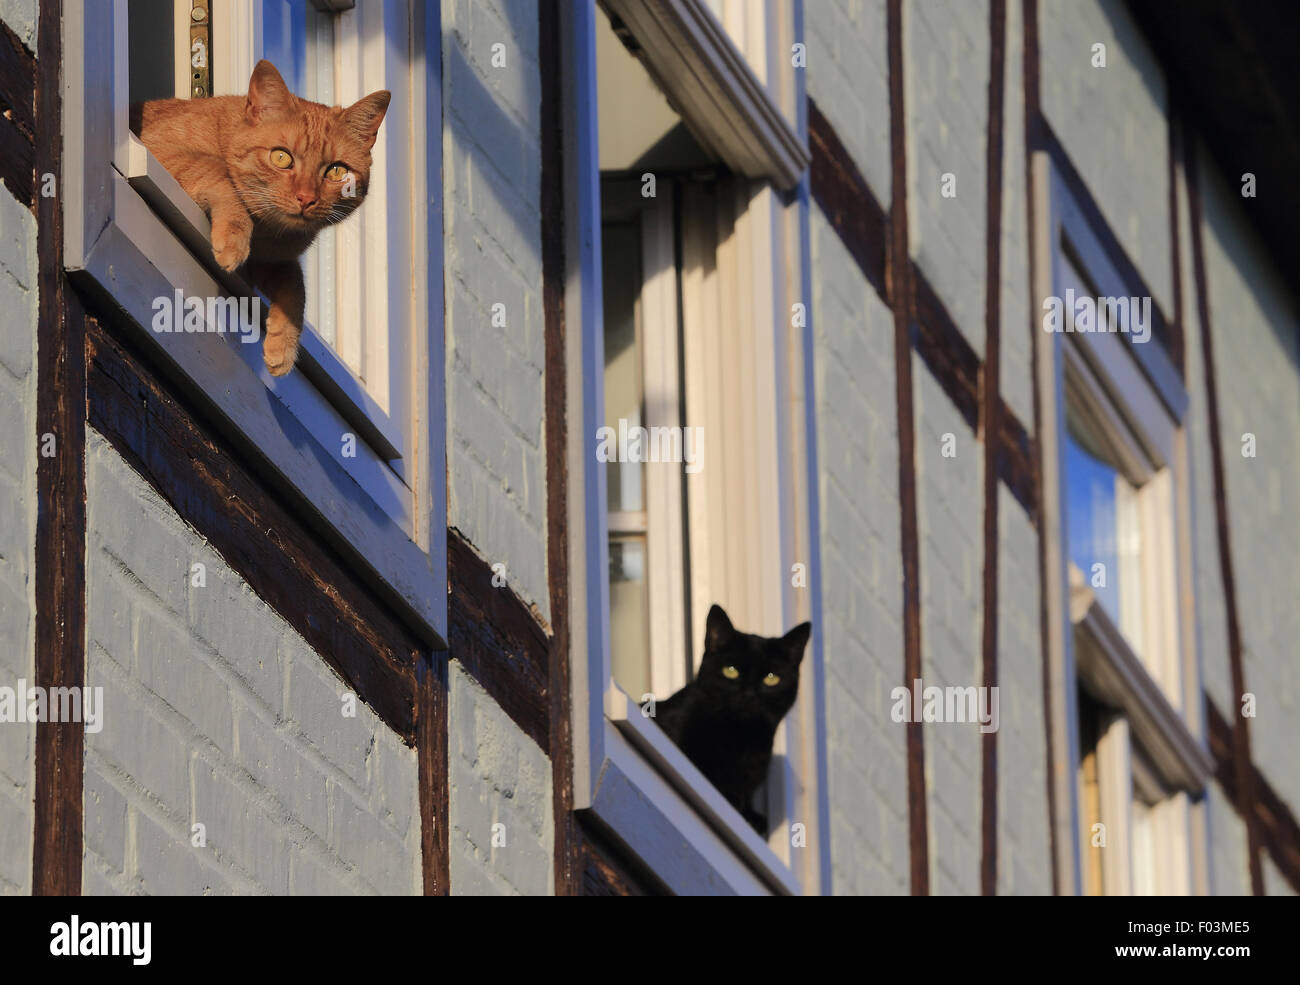 Quedlinburg, Deutschland. 5. August 2015. Zwei Katzen schauen aus dem Fenster eines Fachwerk-Gebäudes in Quedlinburg, Deutschland, 5. August 2015. Foto: JENS WOLF/ZB/Dpa/Alamy Live News Stockfoto